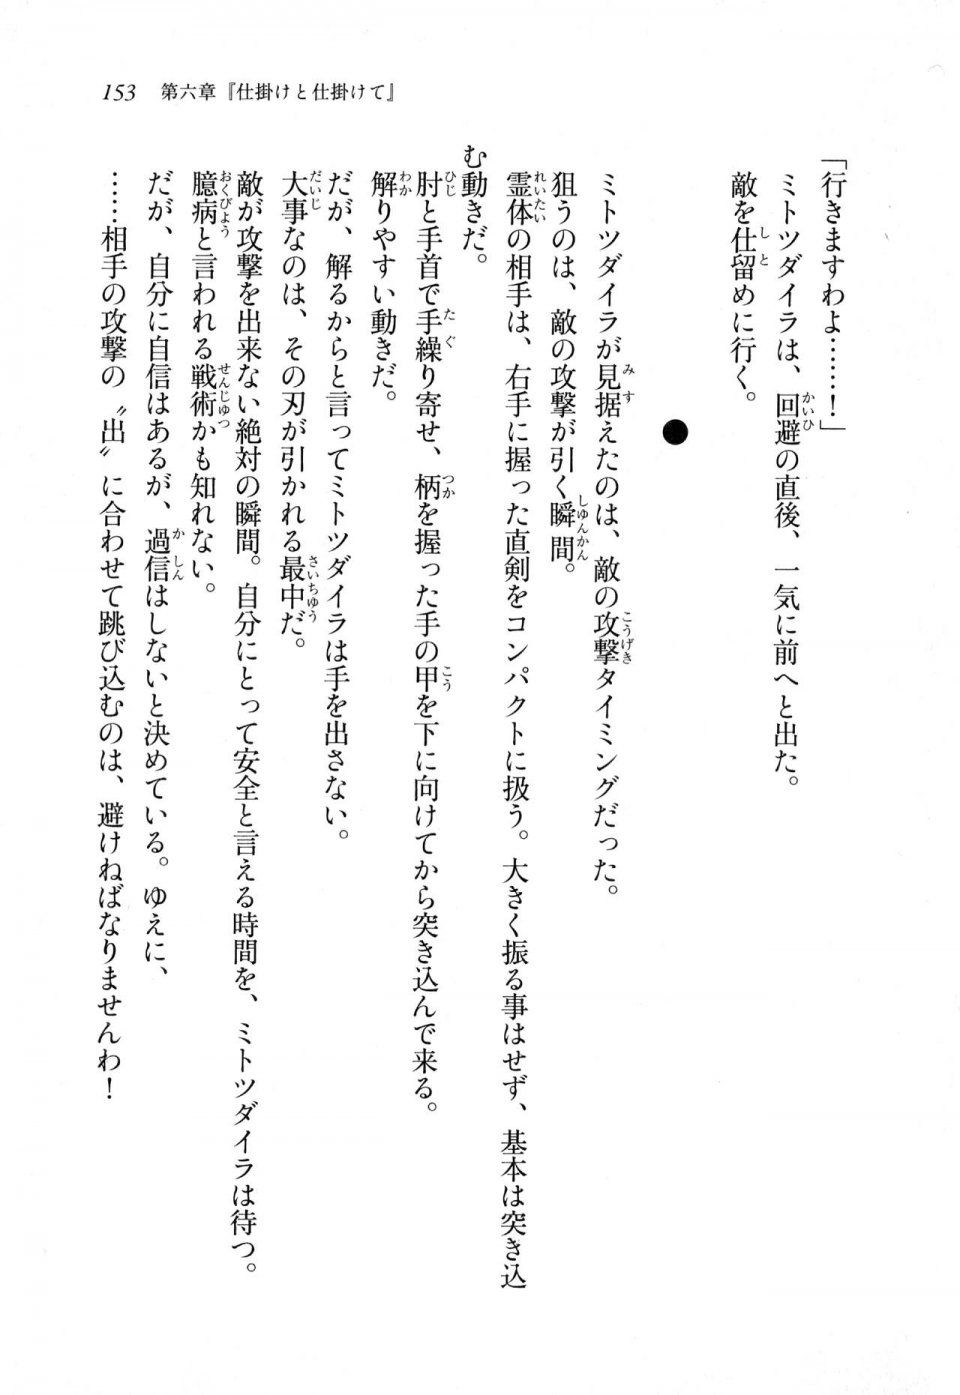 Kyoukai Senjou no Horizon LN Sidestory Vol 1 - Photo #151